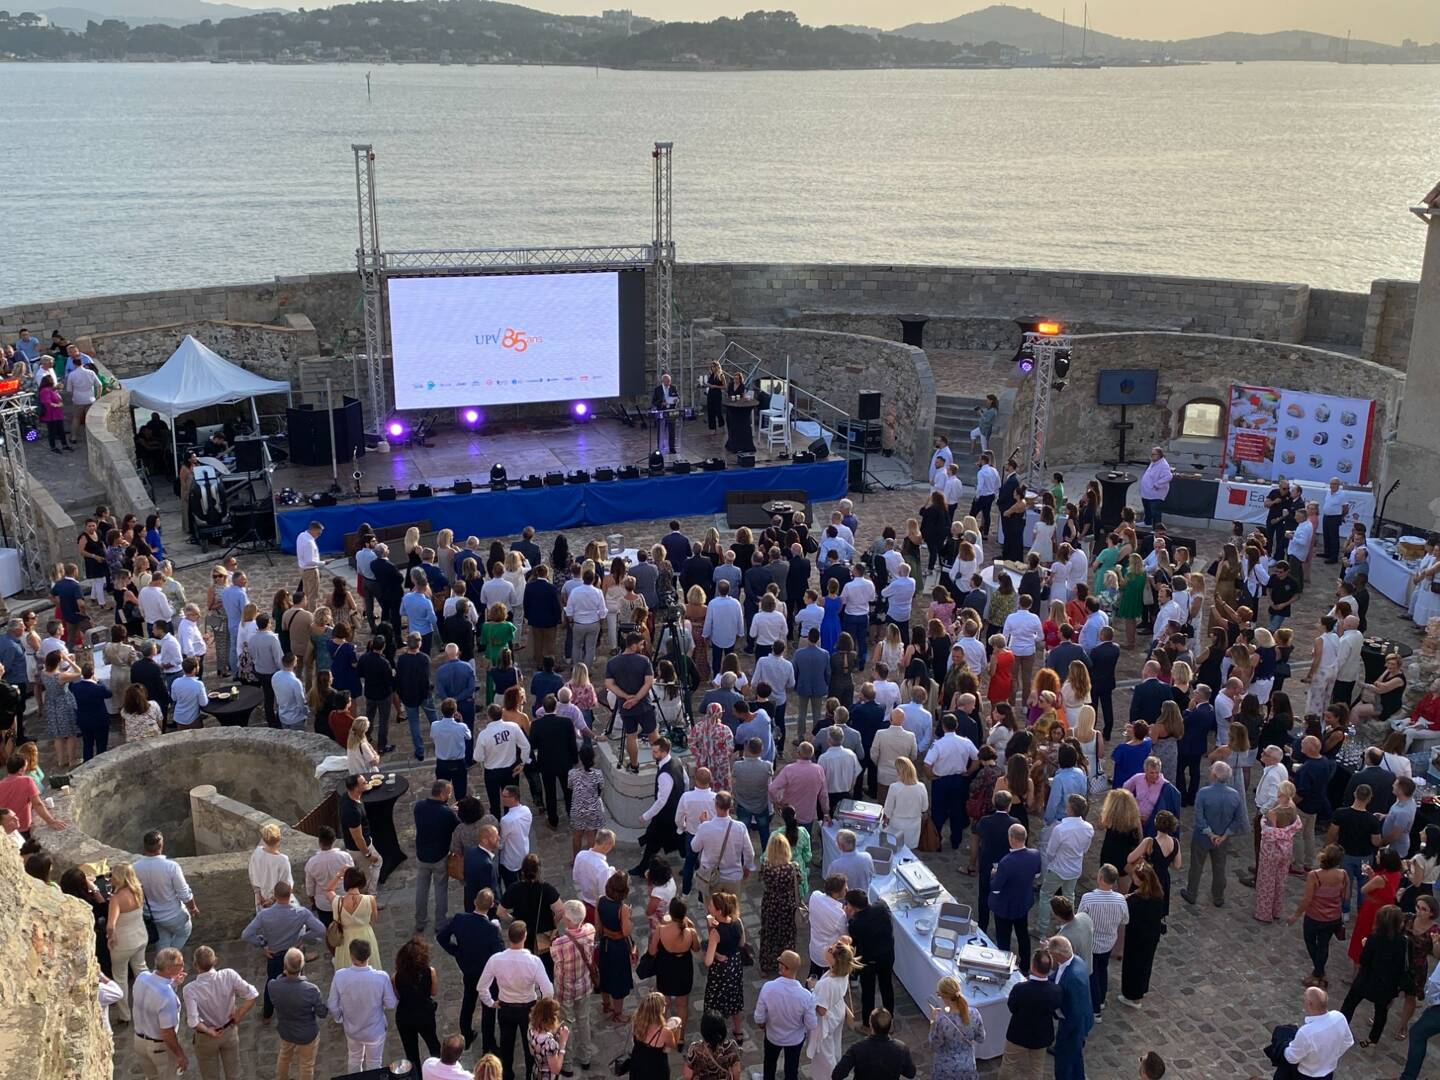 L’Union patronale du Var s’est offert un bel anniversaire mercredi soir dans l’enceinte de la Tour Royale à Toulon située face à la mer et en présence d’un parterre de plus de 500 invités venus de tout le territoire, acteurs économiques et politiques.